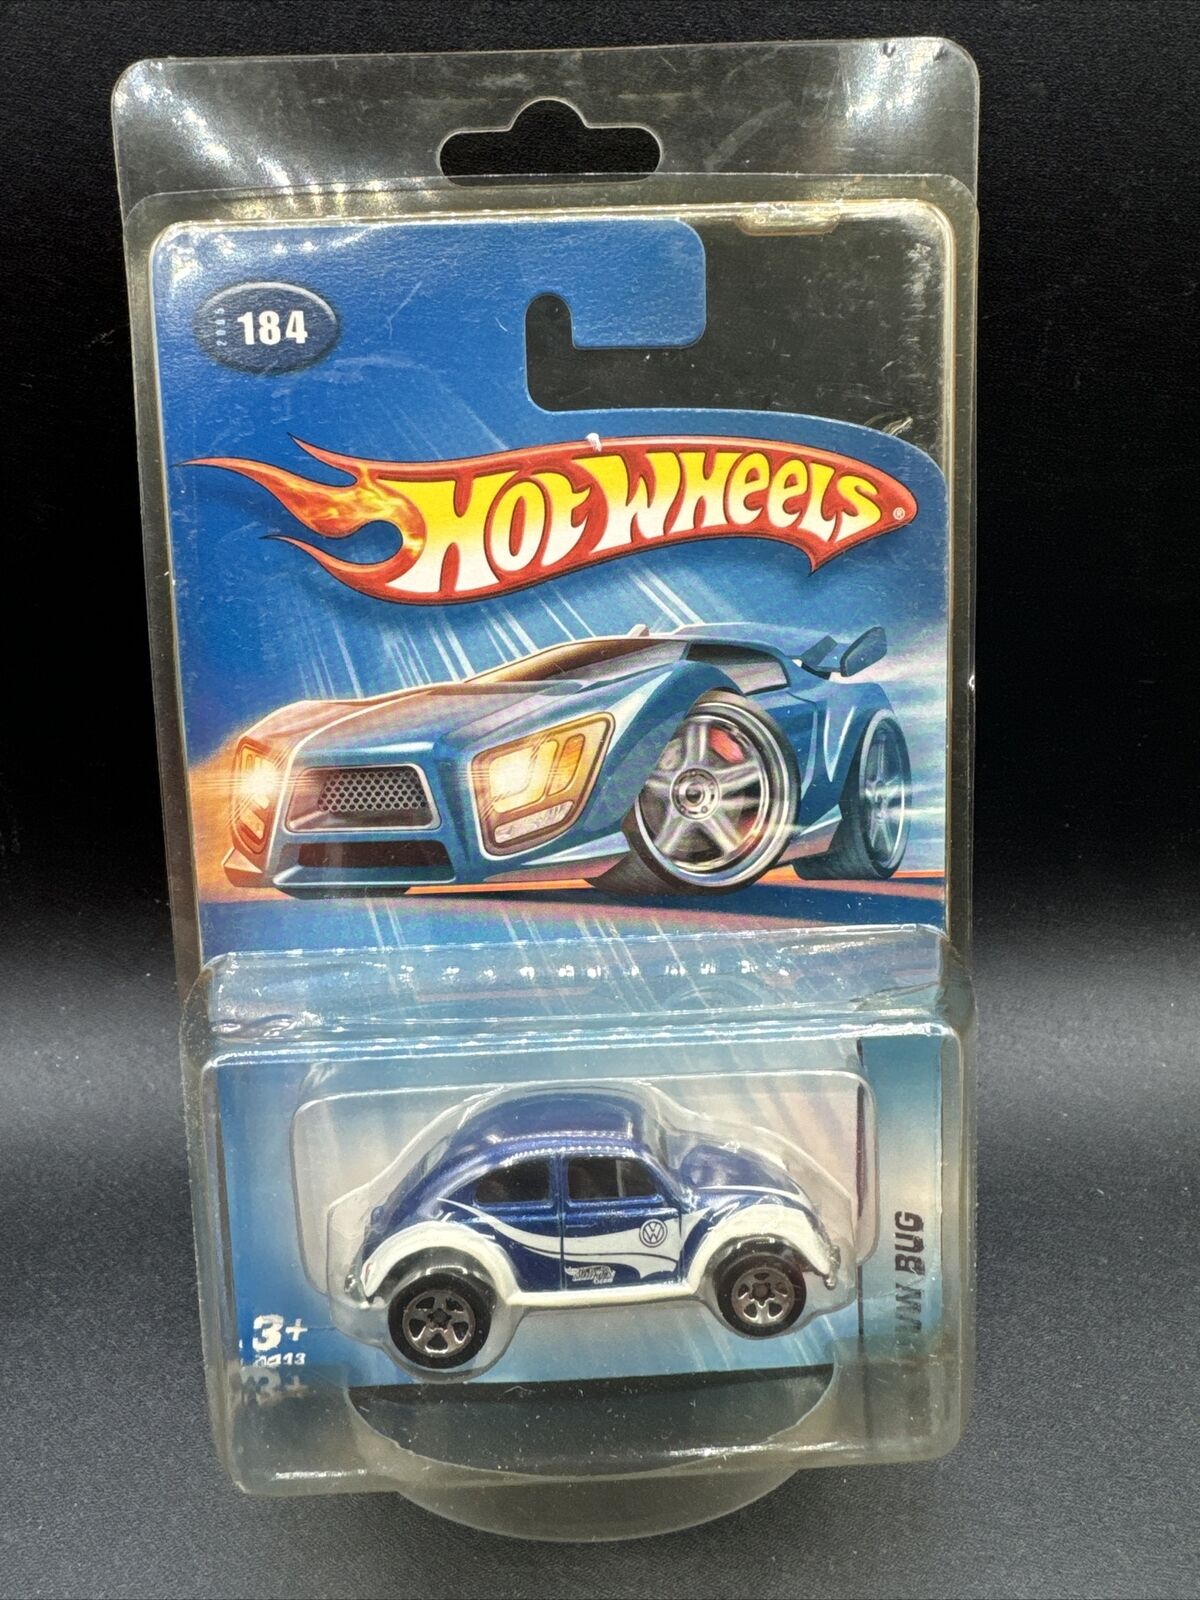 2005 Hot Wheels BLUE VW VOLKSWAGEN BEETLE BUG Exclusive From Kar Keepers 184